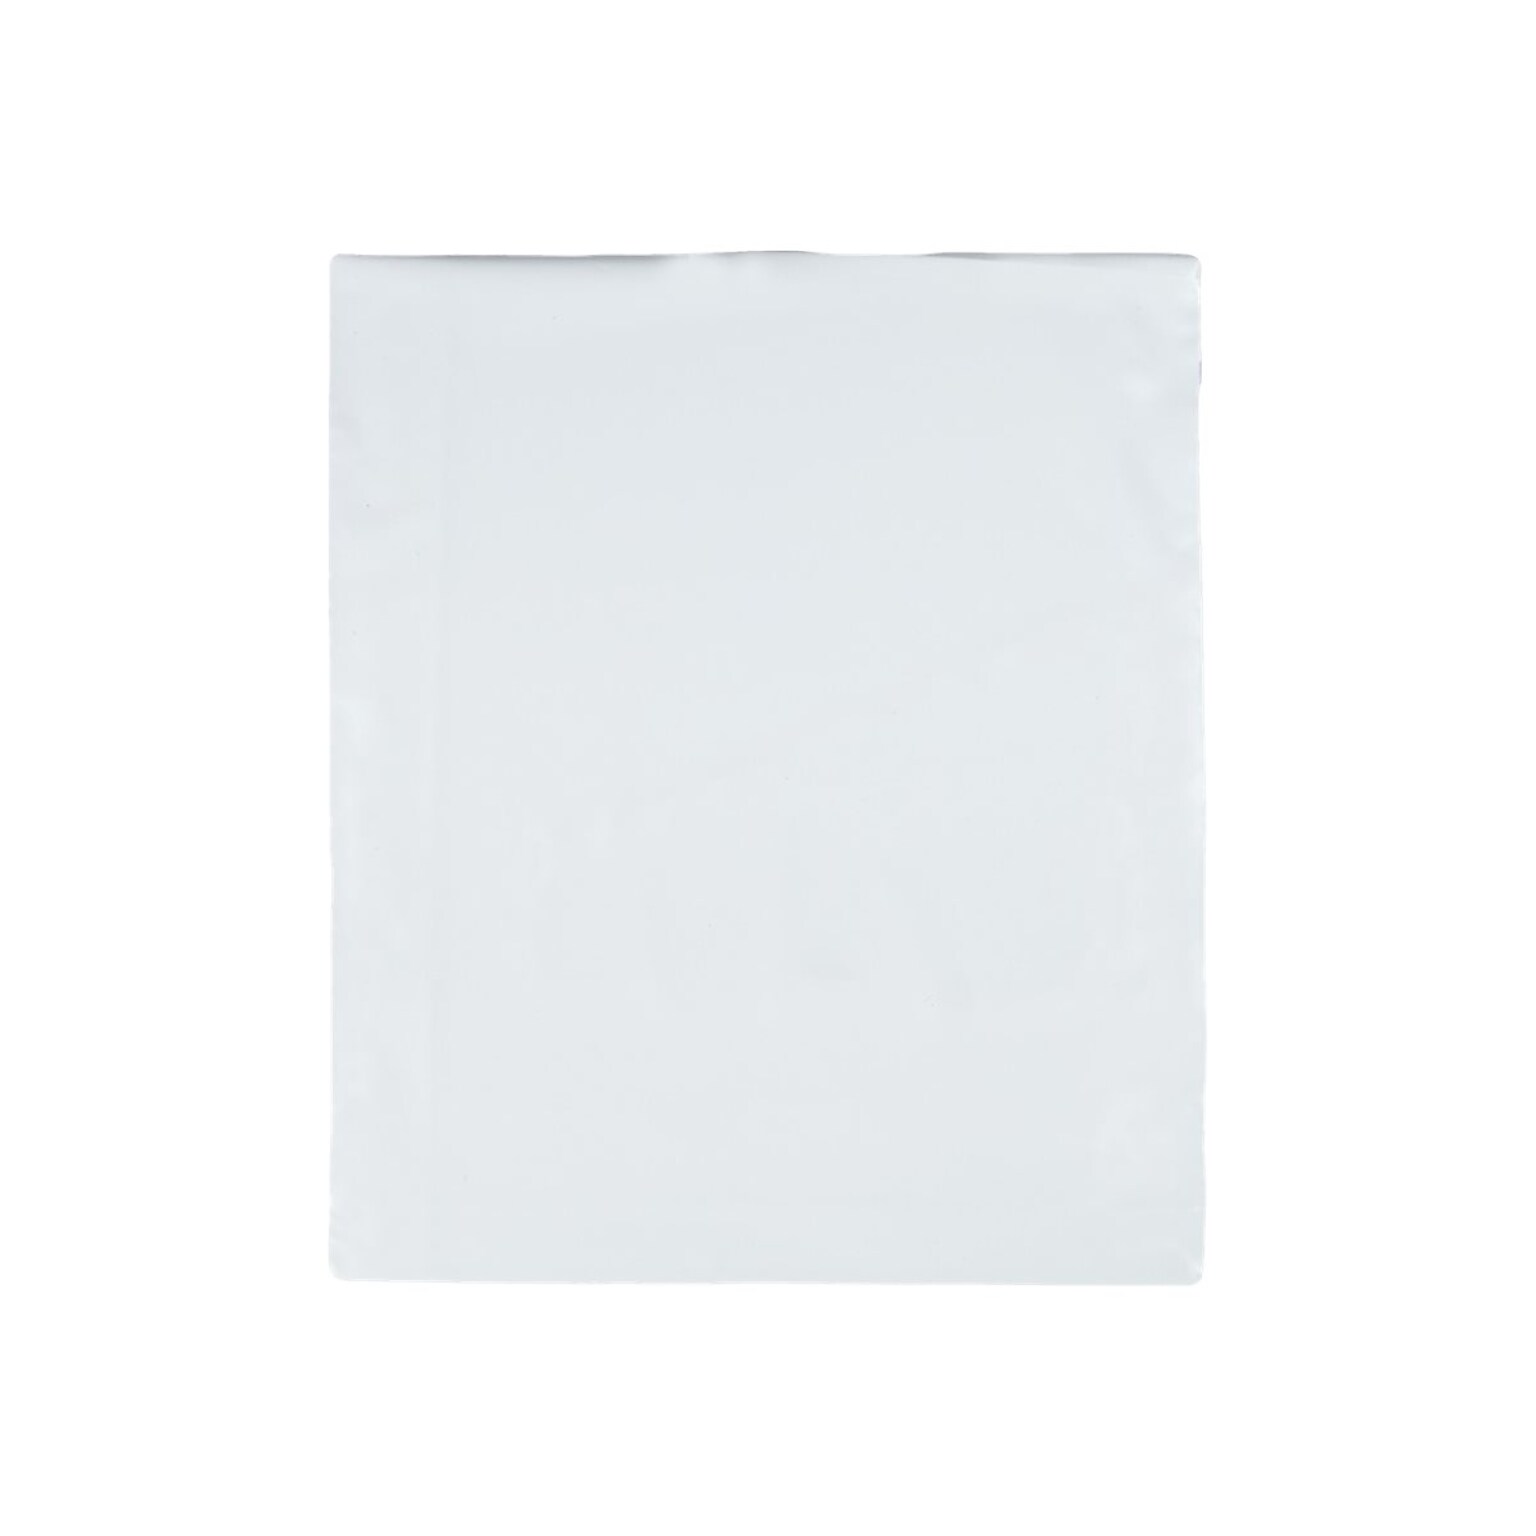 11W x 13L Redi-Strip Expansion Poly Mailers, White, 100/Box (QUA46390)